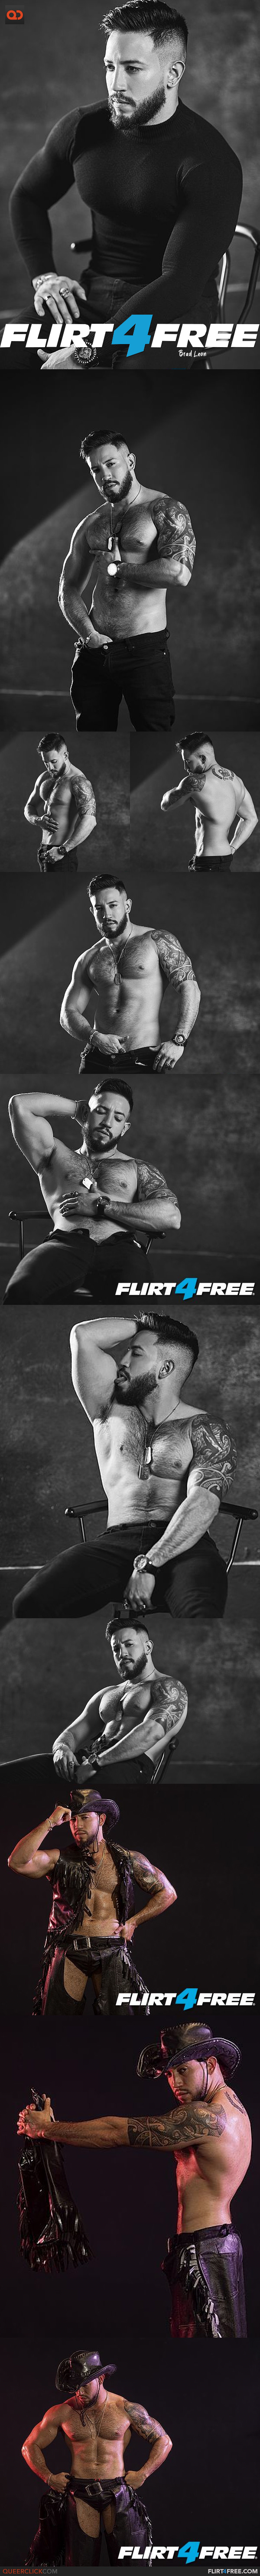 Flirt4Free: Brad Leon